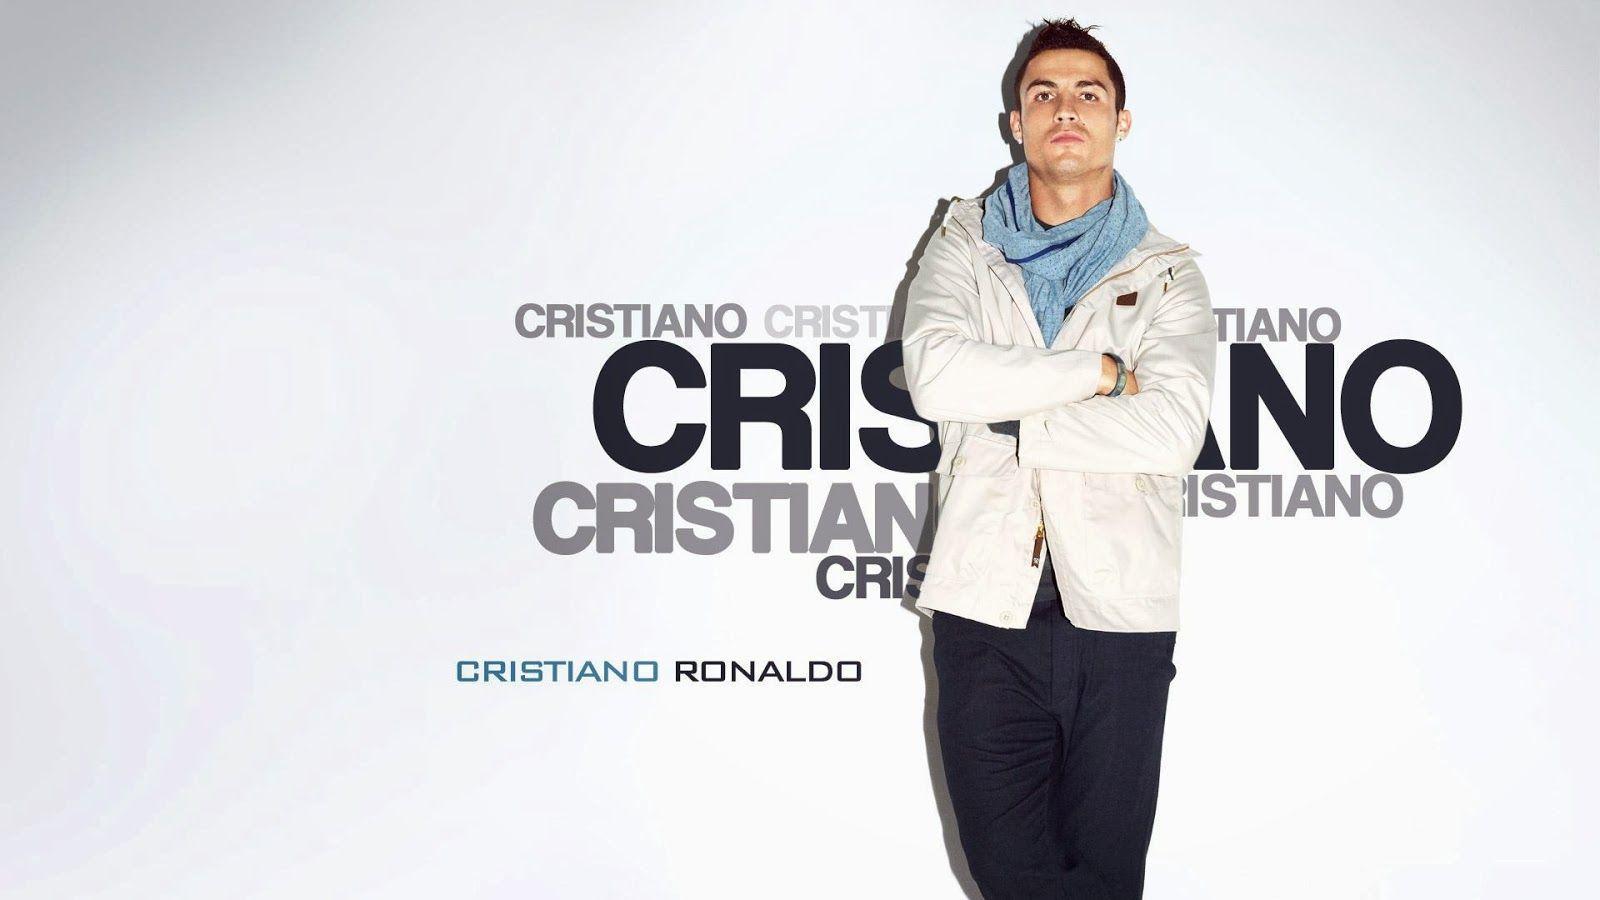 Cristiano Ronaldo CR7 HD Wallpaper Free Download Wallpaper